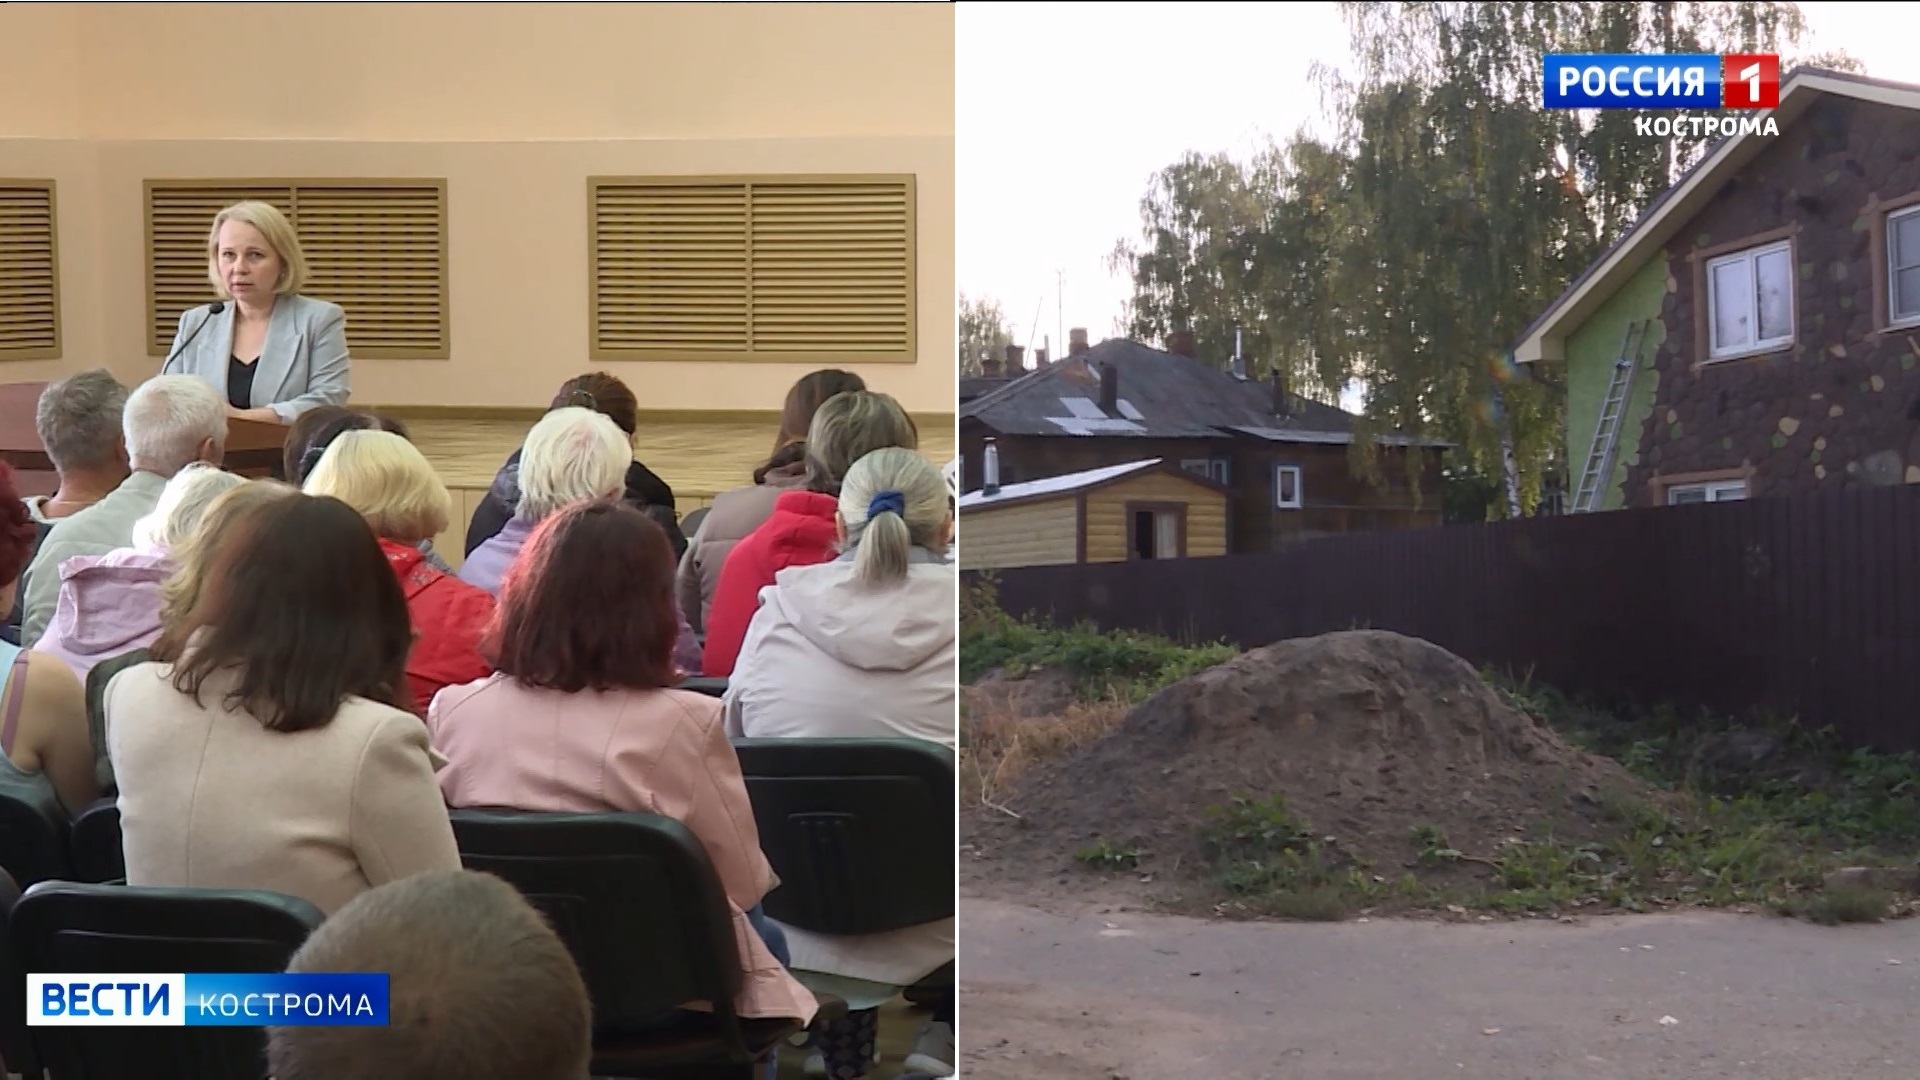 Жителям барачного квартала на севере Костромы разъяснили перспективы реновации